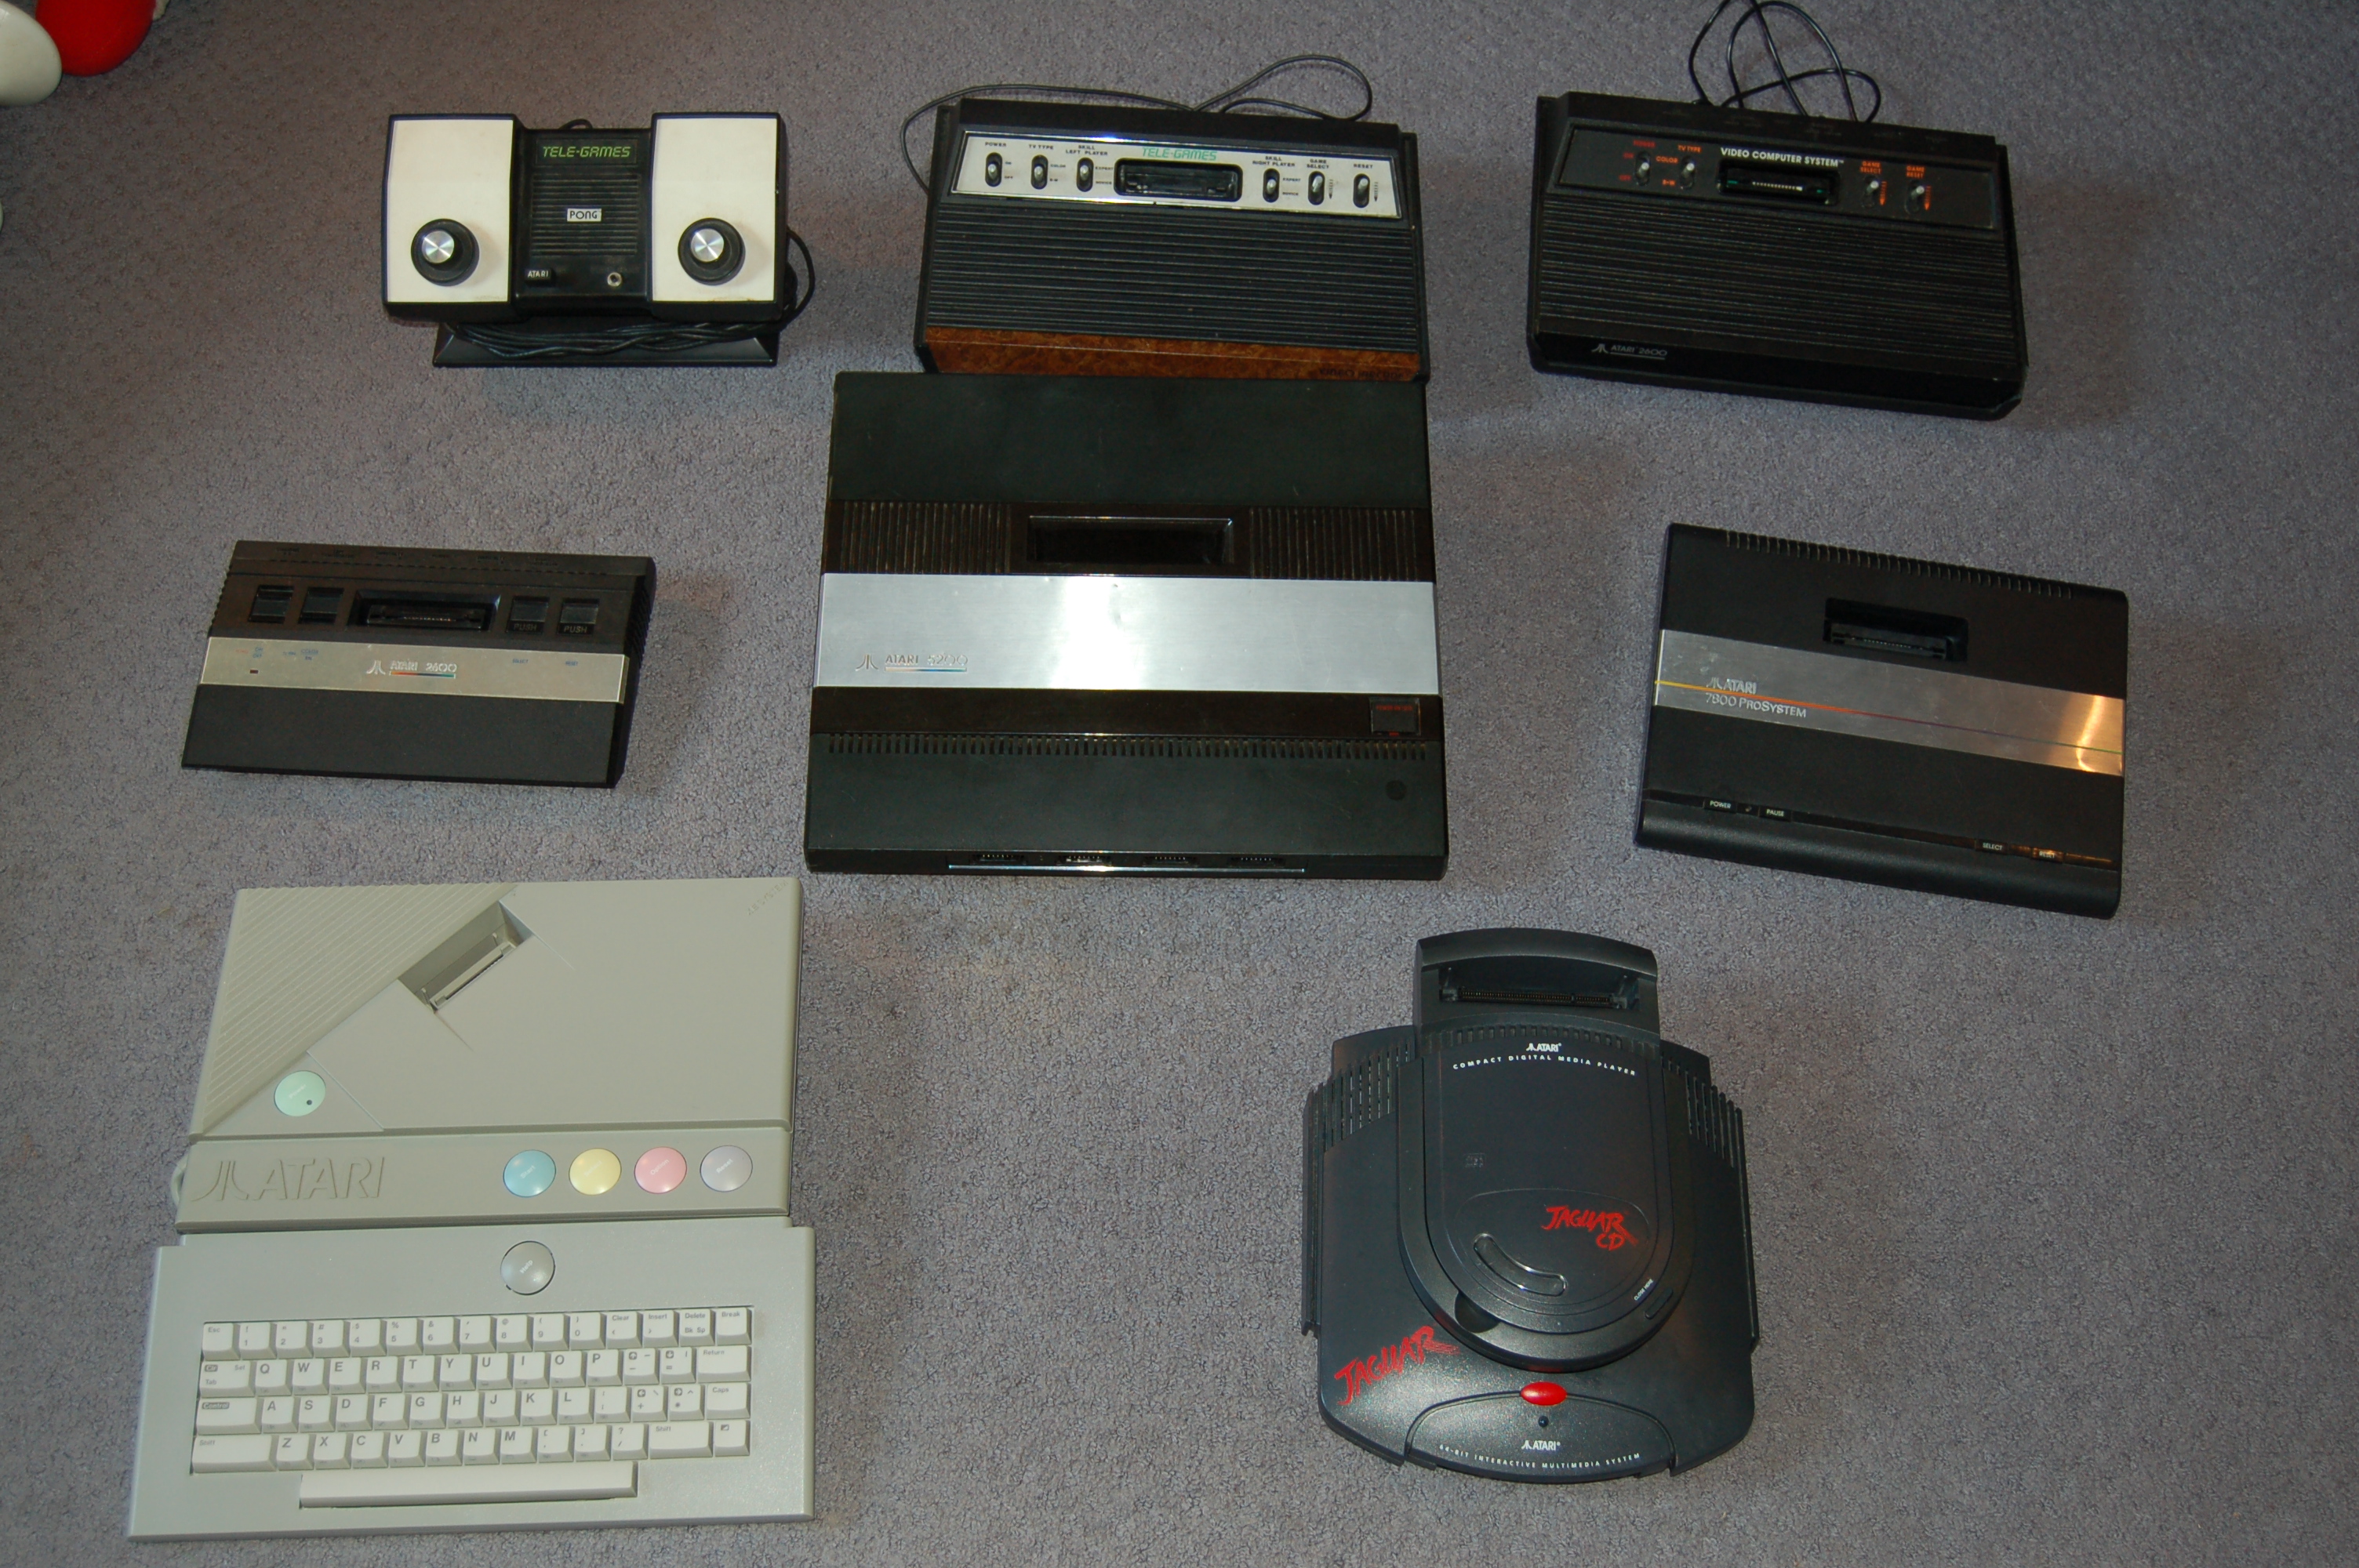 PONG, 2600 (Sears model), 2600 ("Vader" model), 2600 jr, 5200, 7800, XEGS, Jaguar w/ CD